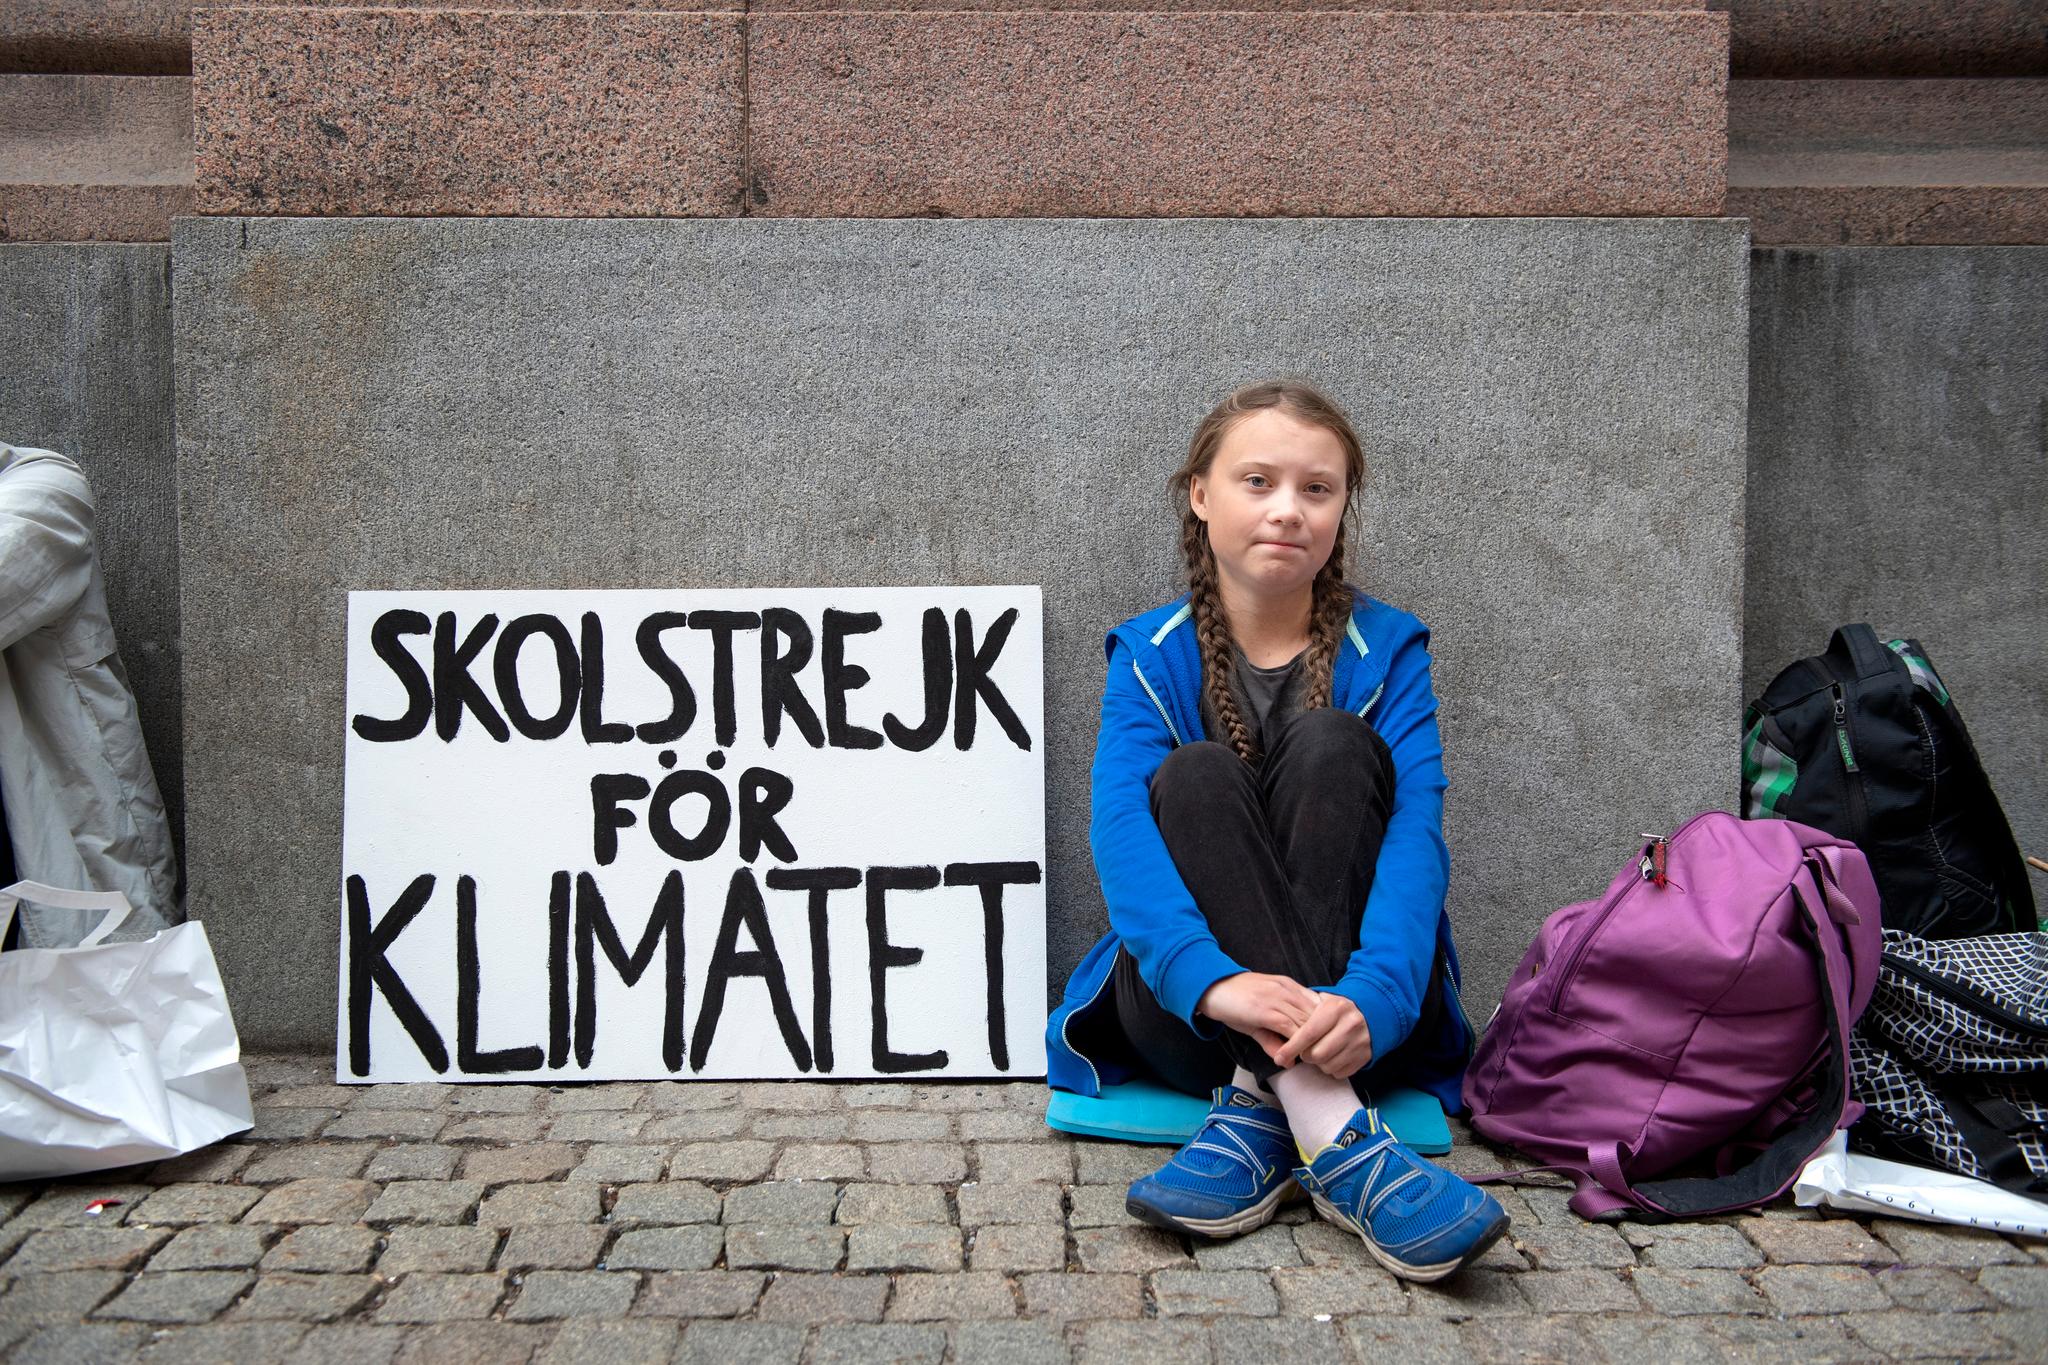 – Siden ingen andre gjør noe med klimaet, så vil jeg gjøre det. Det er mitt moralske ansvar å gjøre noe, sa Greta Thunberg da hun satt utenfor Riksdagen i Stockholm høsten 2018. 